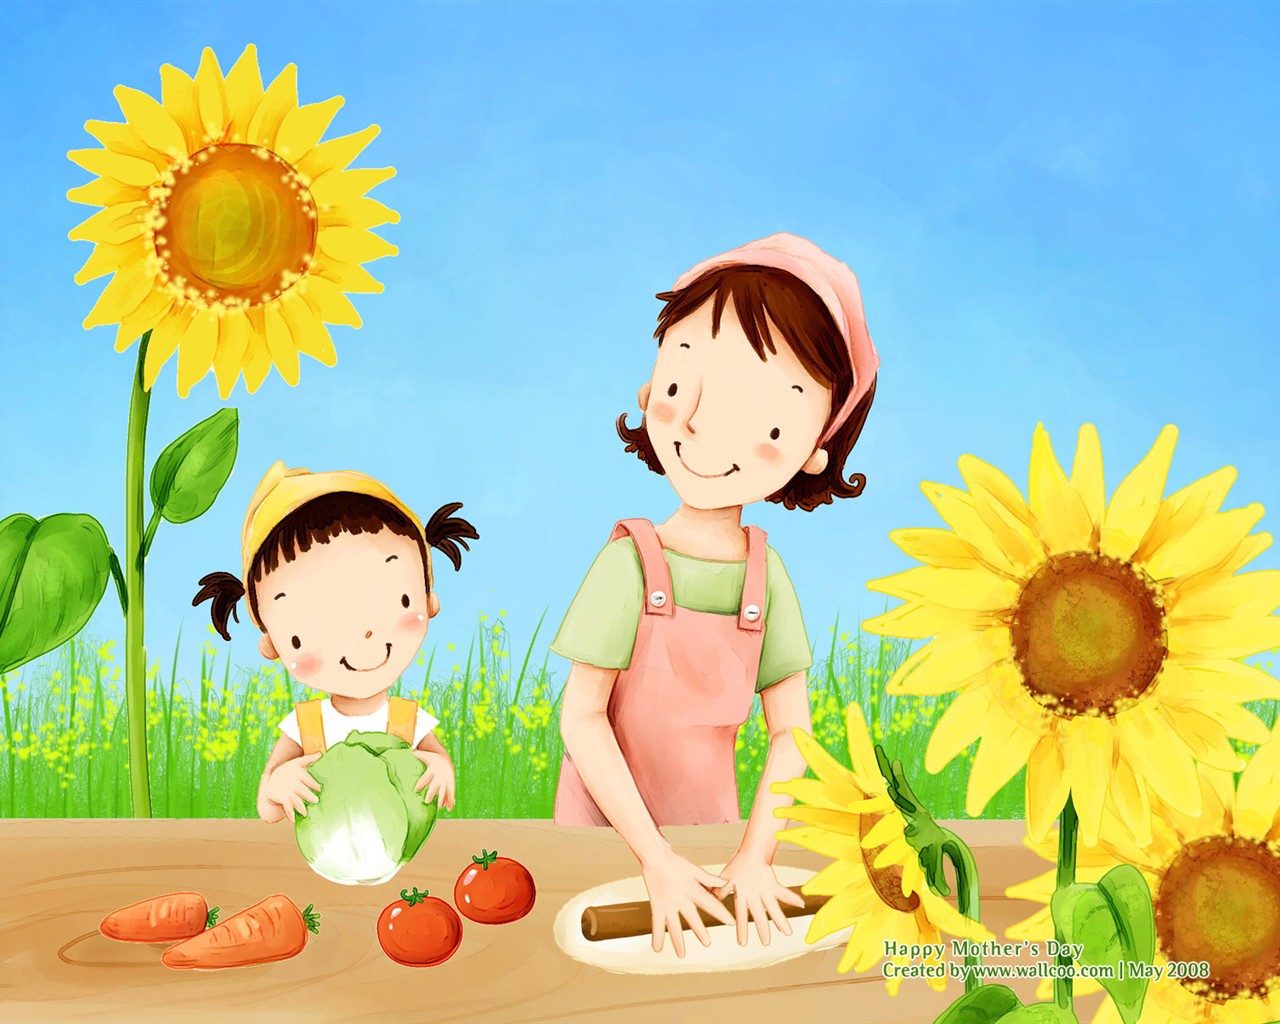 Mother's Day thème du papier peint du Sud illustrateur coréen #20 - 1280x1024